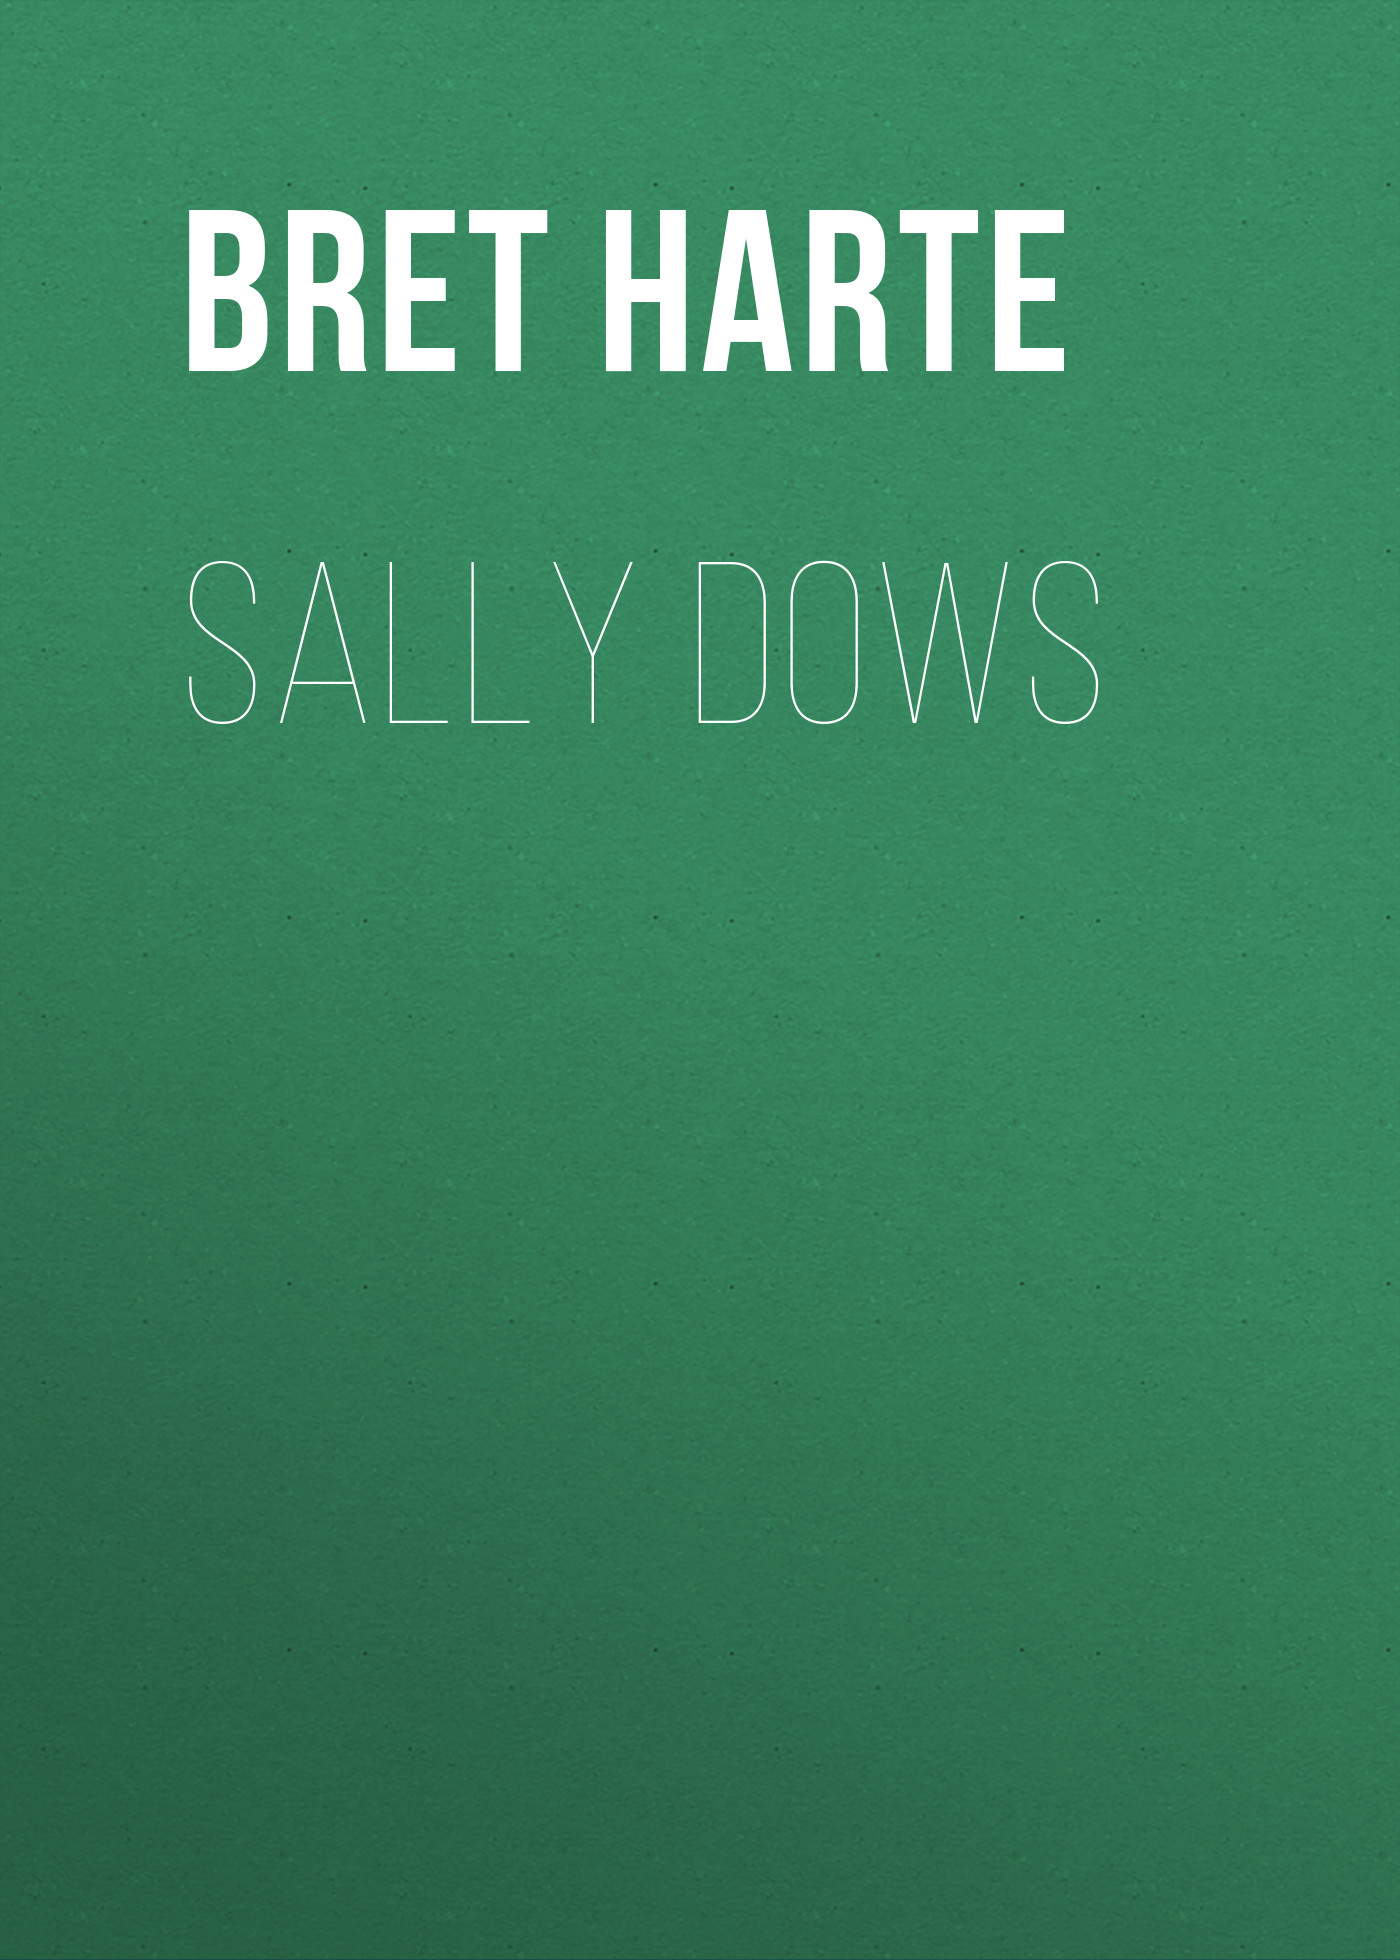 Книга Sally Dows из серии , созданная Bret Harte, может относится к жанру Зарубежная фантастика, Литература 19 века, Зарубежная старинная литература, Зарубежная классика. Стоимость электронной книги Sally Dows с идентификатором 36323756 составляет 0 руб.